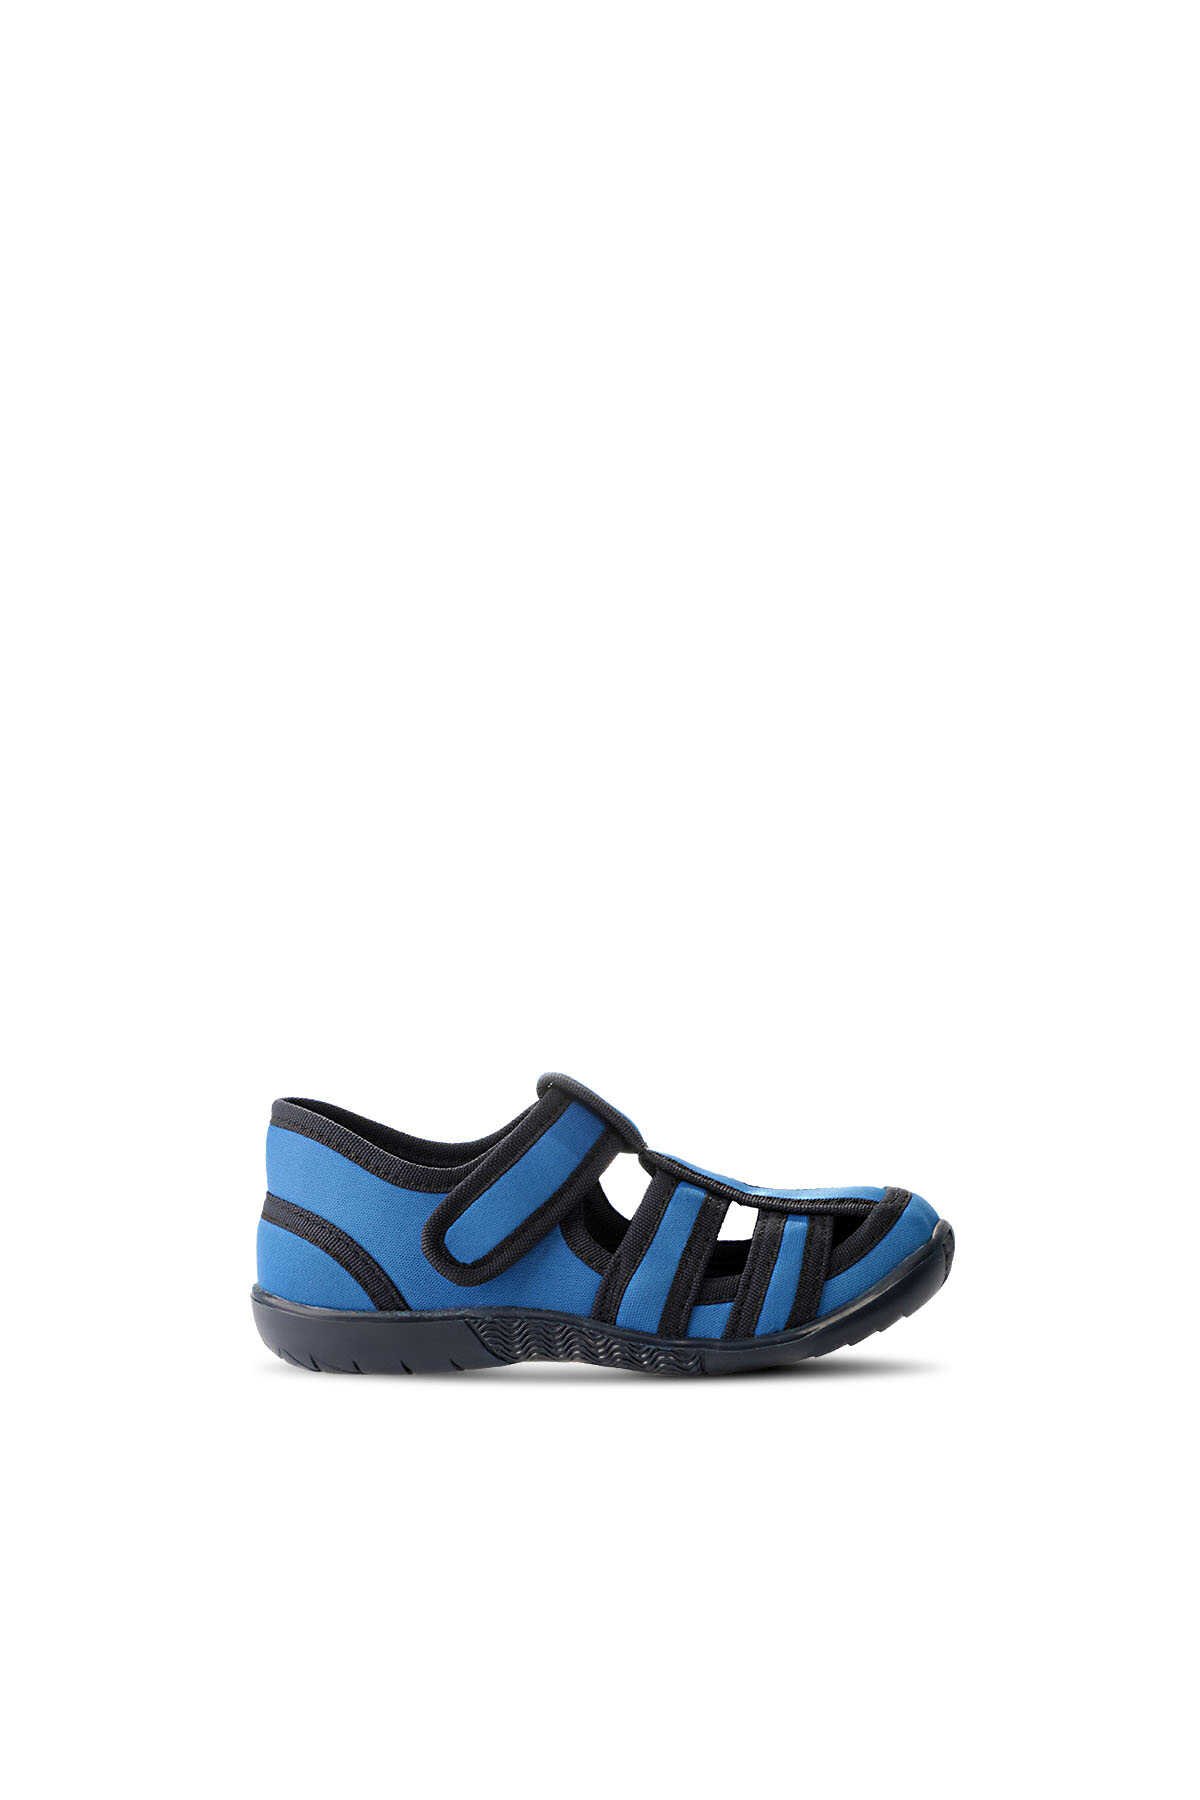 Slazenger - Slazenger UZZY Spor Erkek Çocuk Ayakkabı Saks Mavi